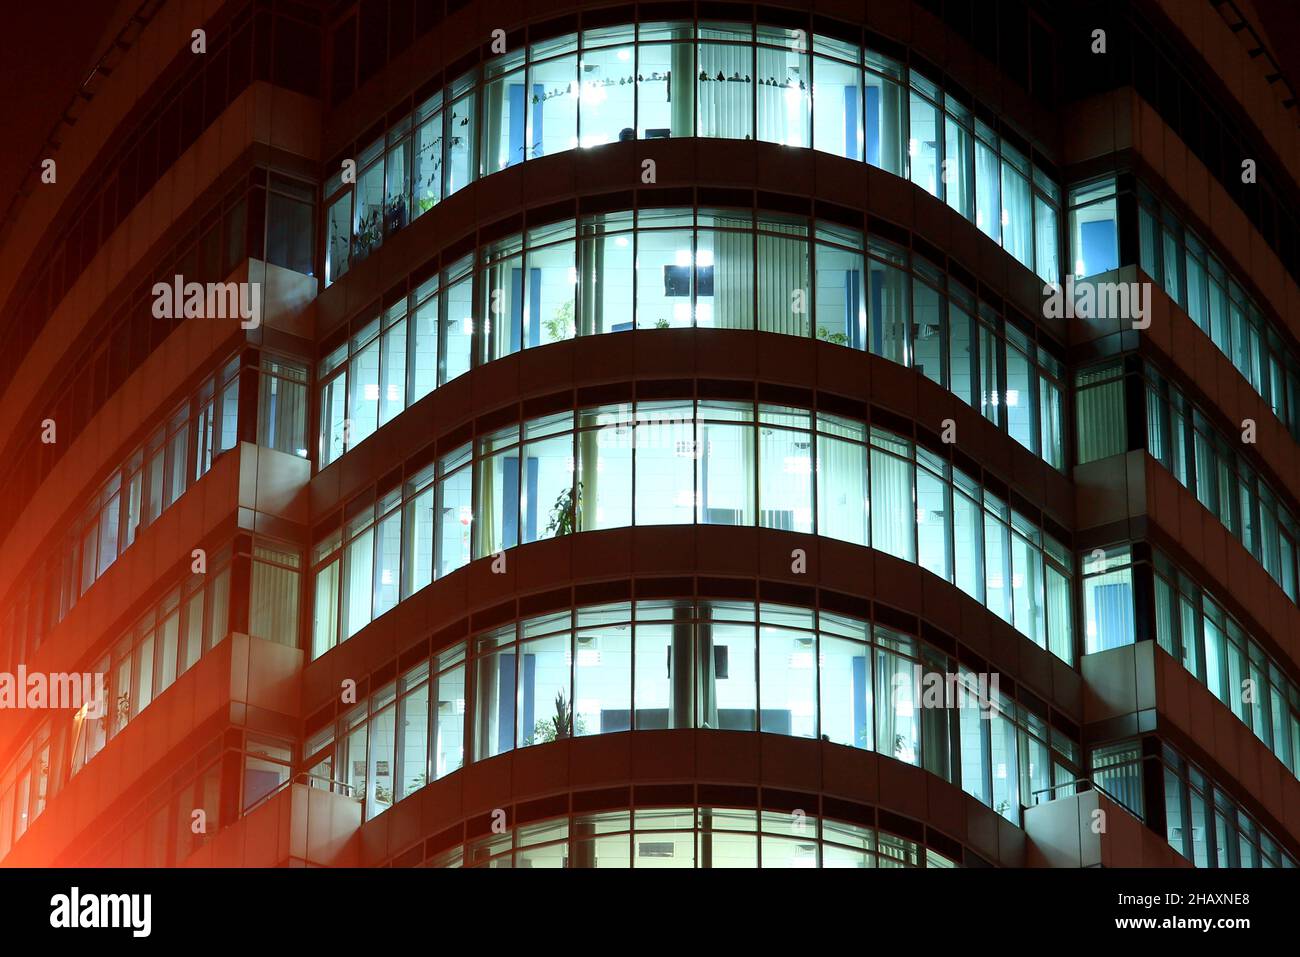 La façade d'un bâtiment en verre rond avec de grandes fenêtres panoramiques et des balcons la nuit, les fenêtres brillent dans l'obscurité.Dnipro City, Dnepr, Ukraine Banque D'Images